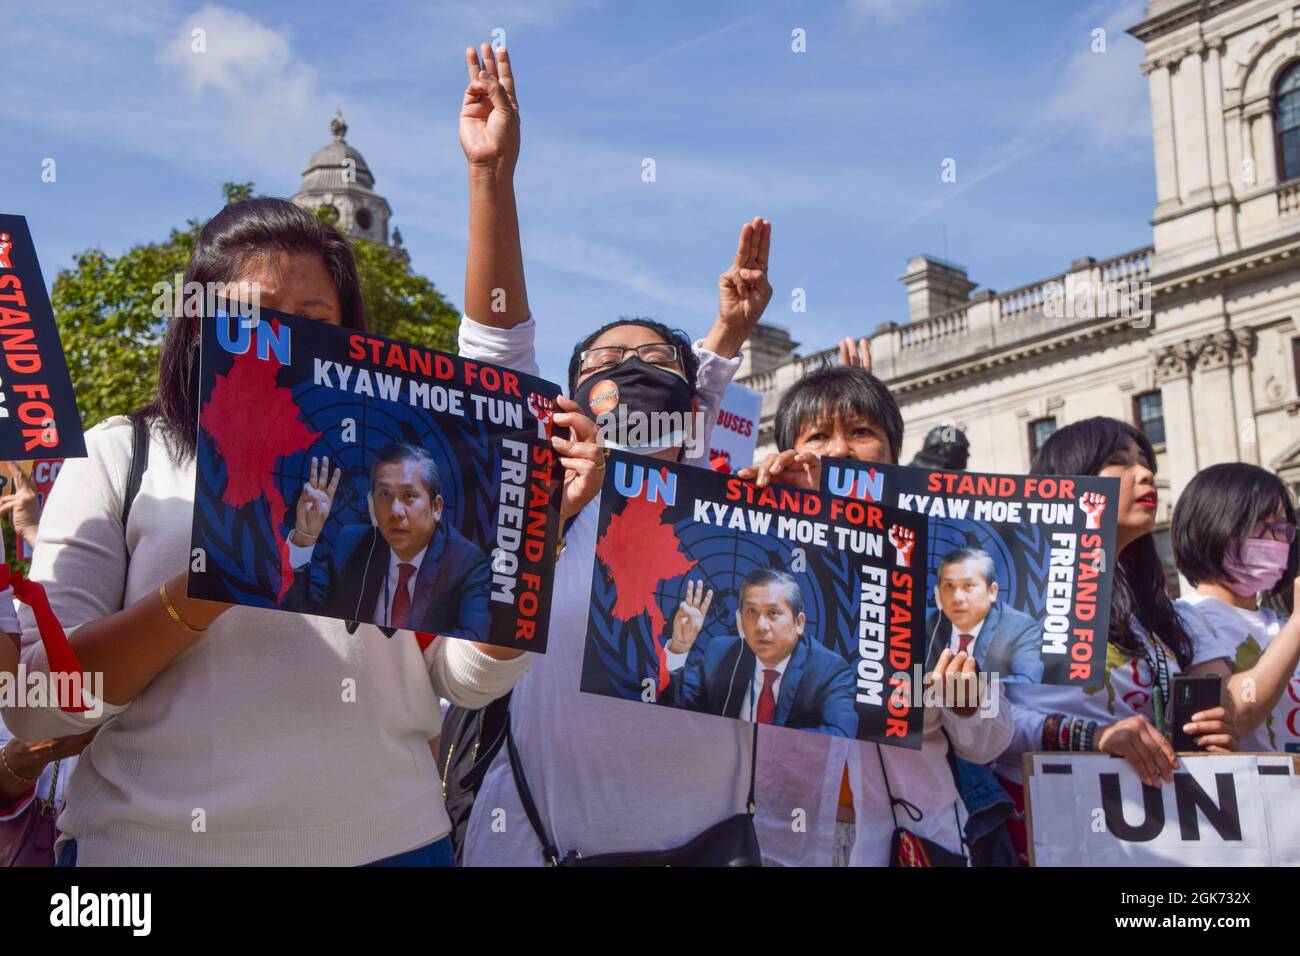 Londra, Regno Unito. 11 settembre 2021. Manifestanti in Piazza del Parlamento. I manifestanti si sono riuniti a Westminster a sostegno del rappresentante dell'ONU del Myanmar Kyaw Moe Tun e per protestare contro il colpo di stato militare in Myanmar. Foto Stock